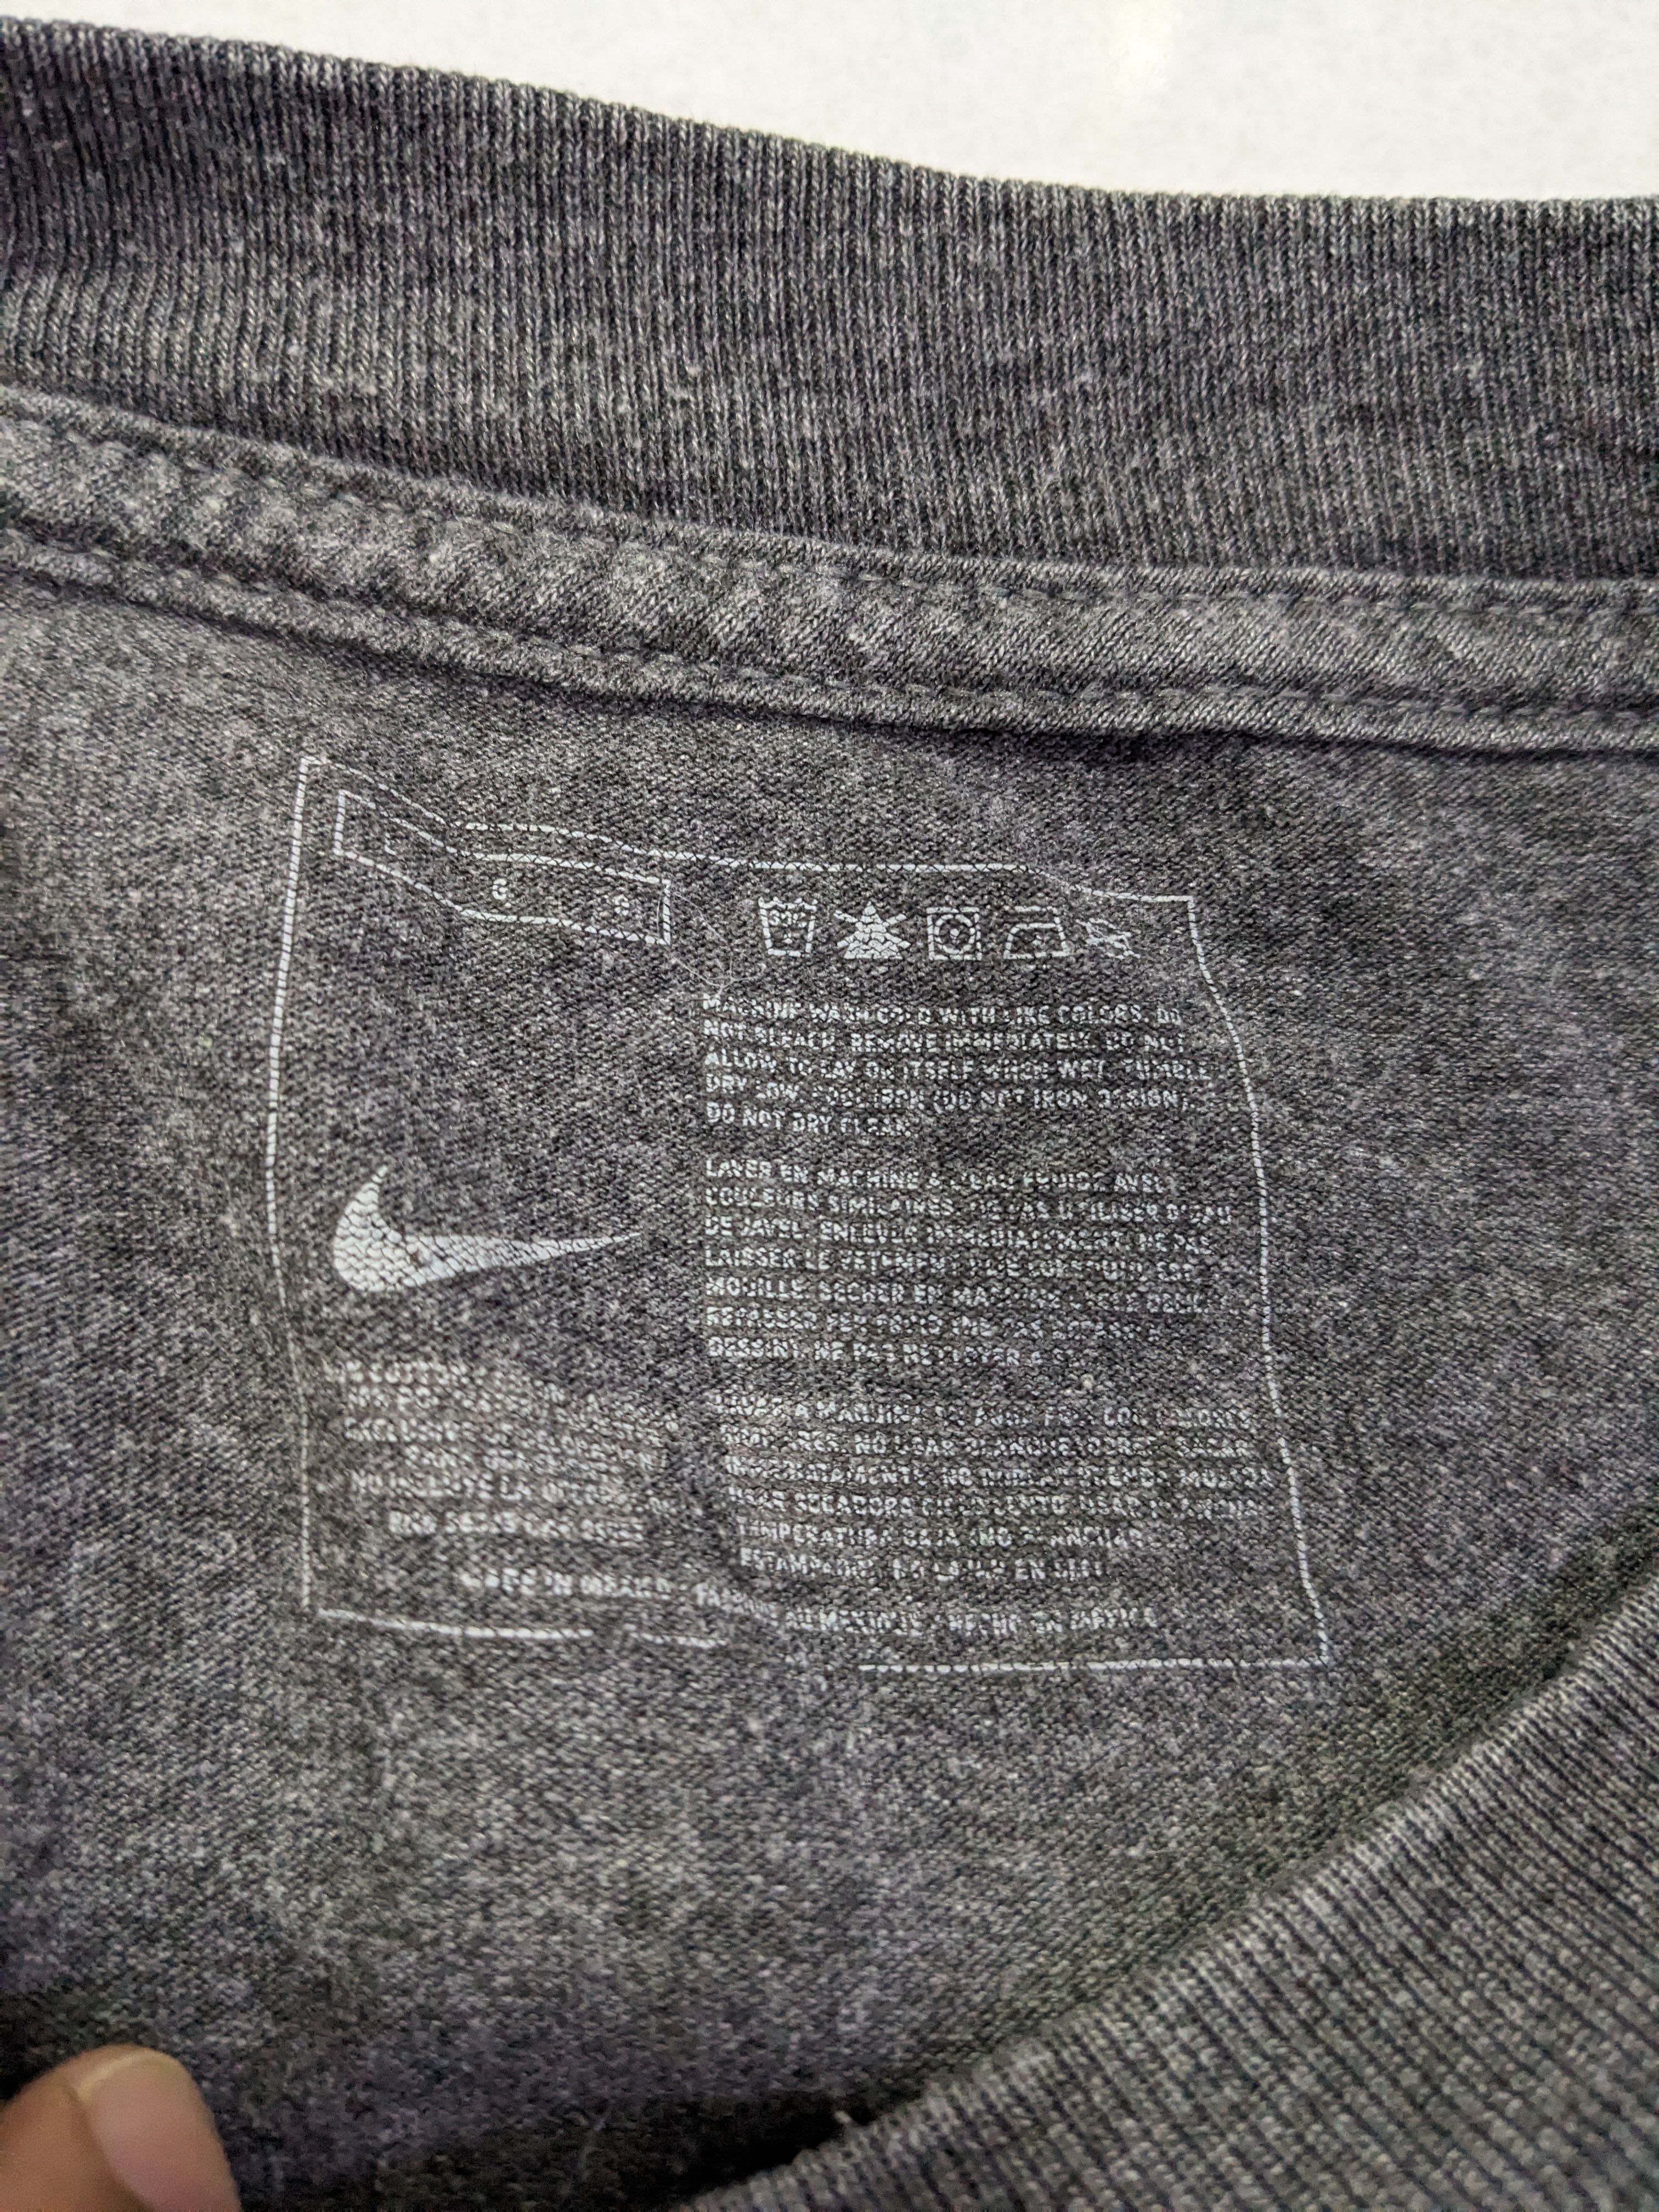 Nike Pegasus Gray T-shirt Size L Mens - 5